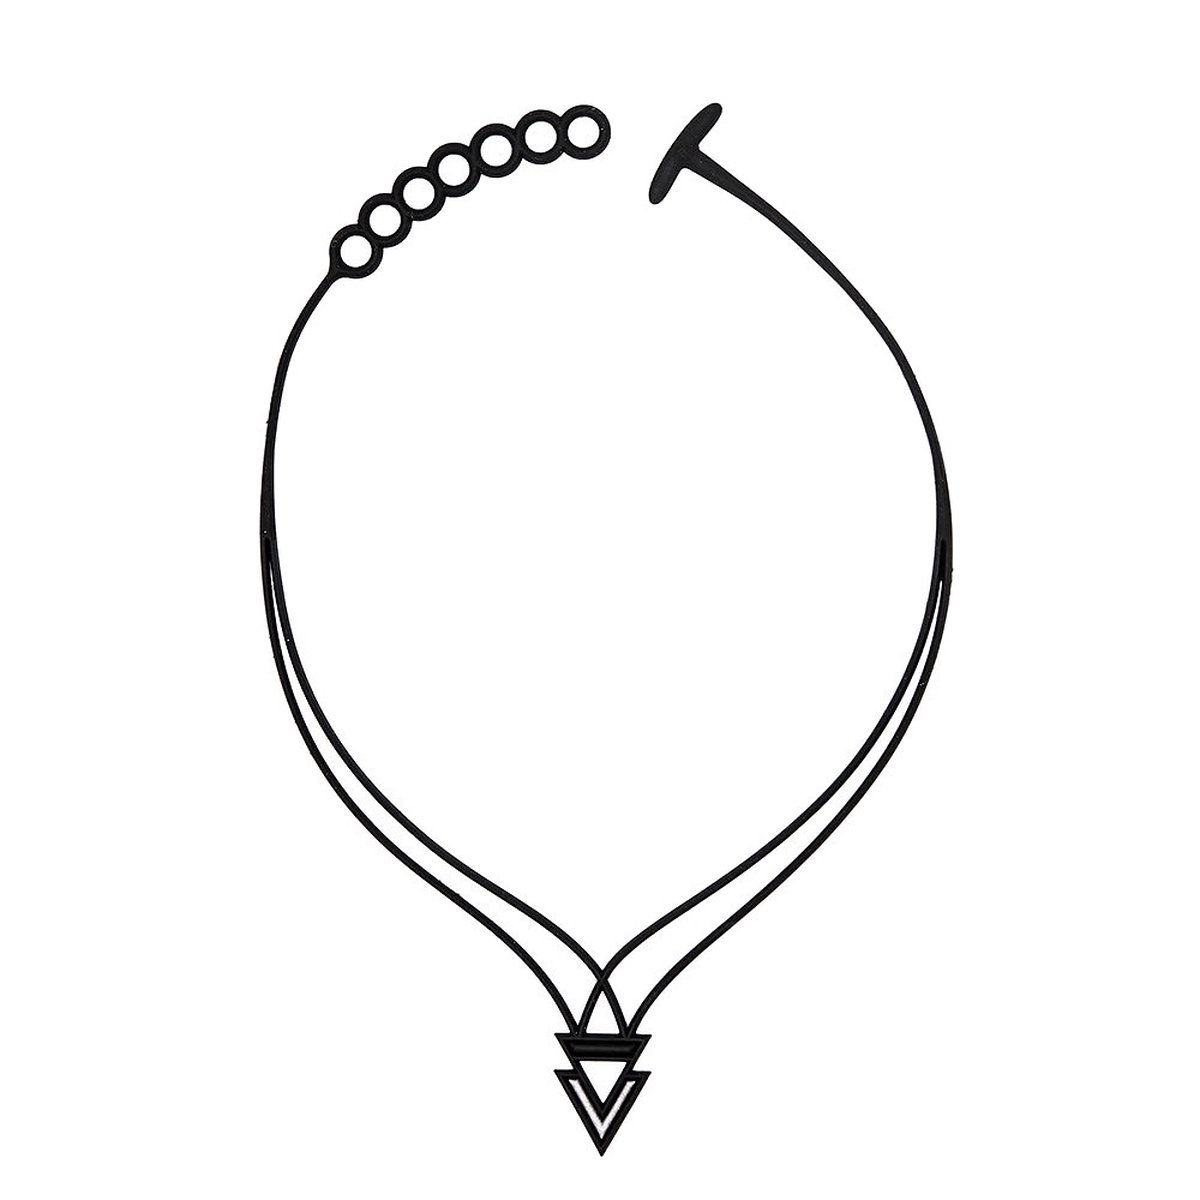 Batucada - Bermudes - Collier van Plantaardige Oorsprong en Hypoallergeen - Vrouwen Ketting met driehoek – Antiallergisch halsketting - Zwart – Zilver - lengte 40/45 cm – effect Tattoo - ziet er uit als Rubber